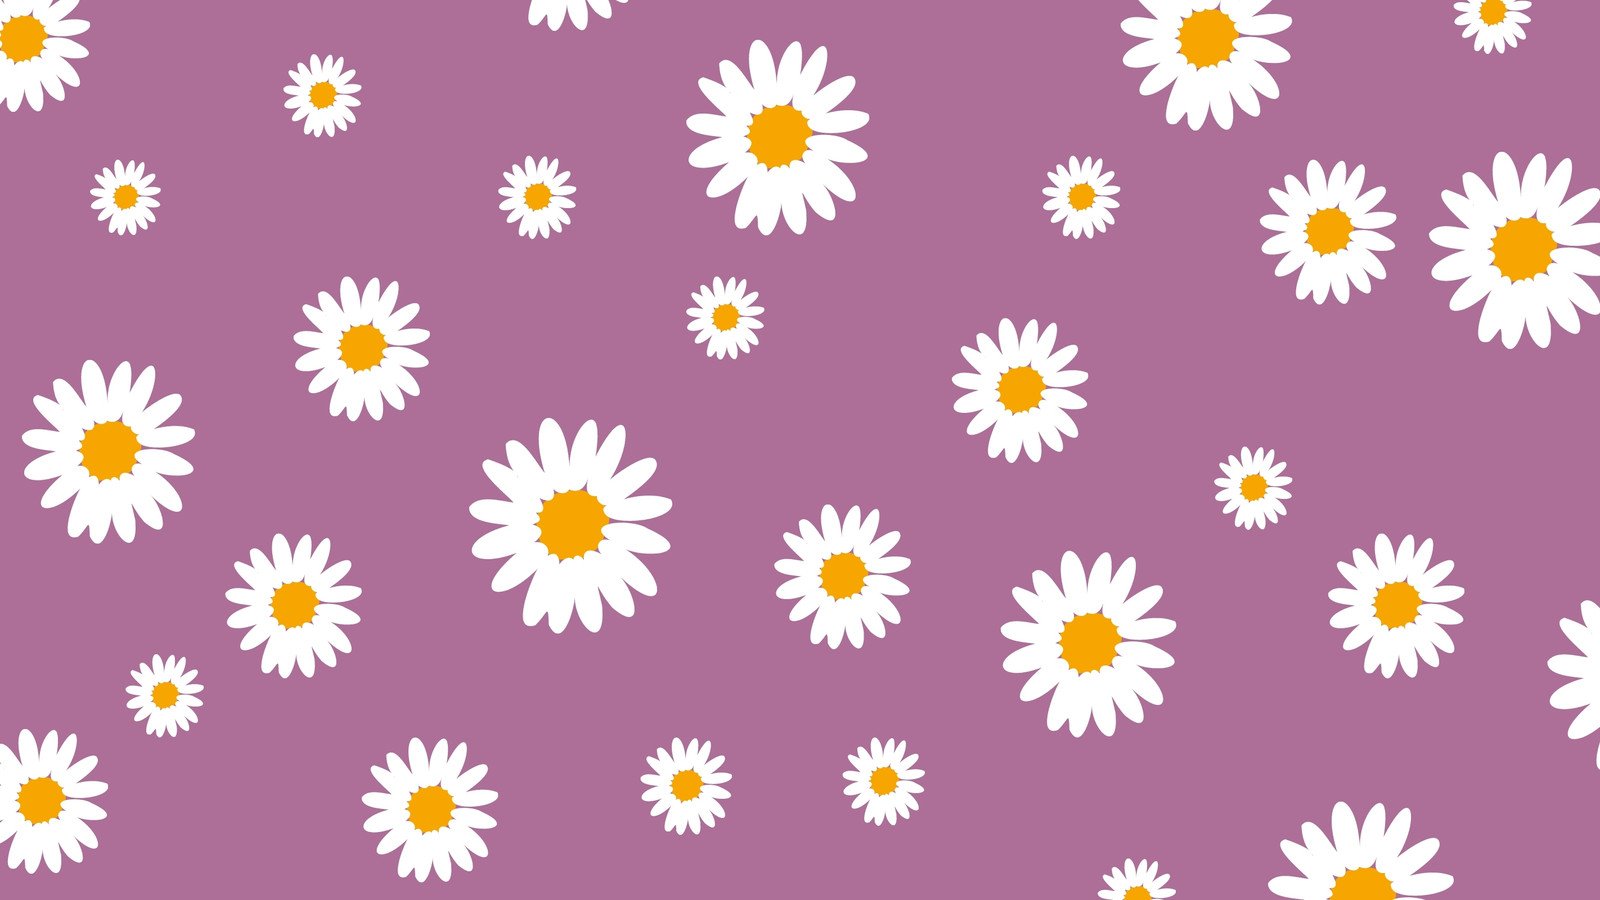 Best Atumn Daisy Flower Desktop Wallpaper Photos Free Download